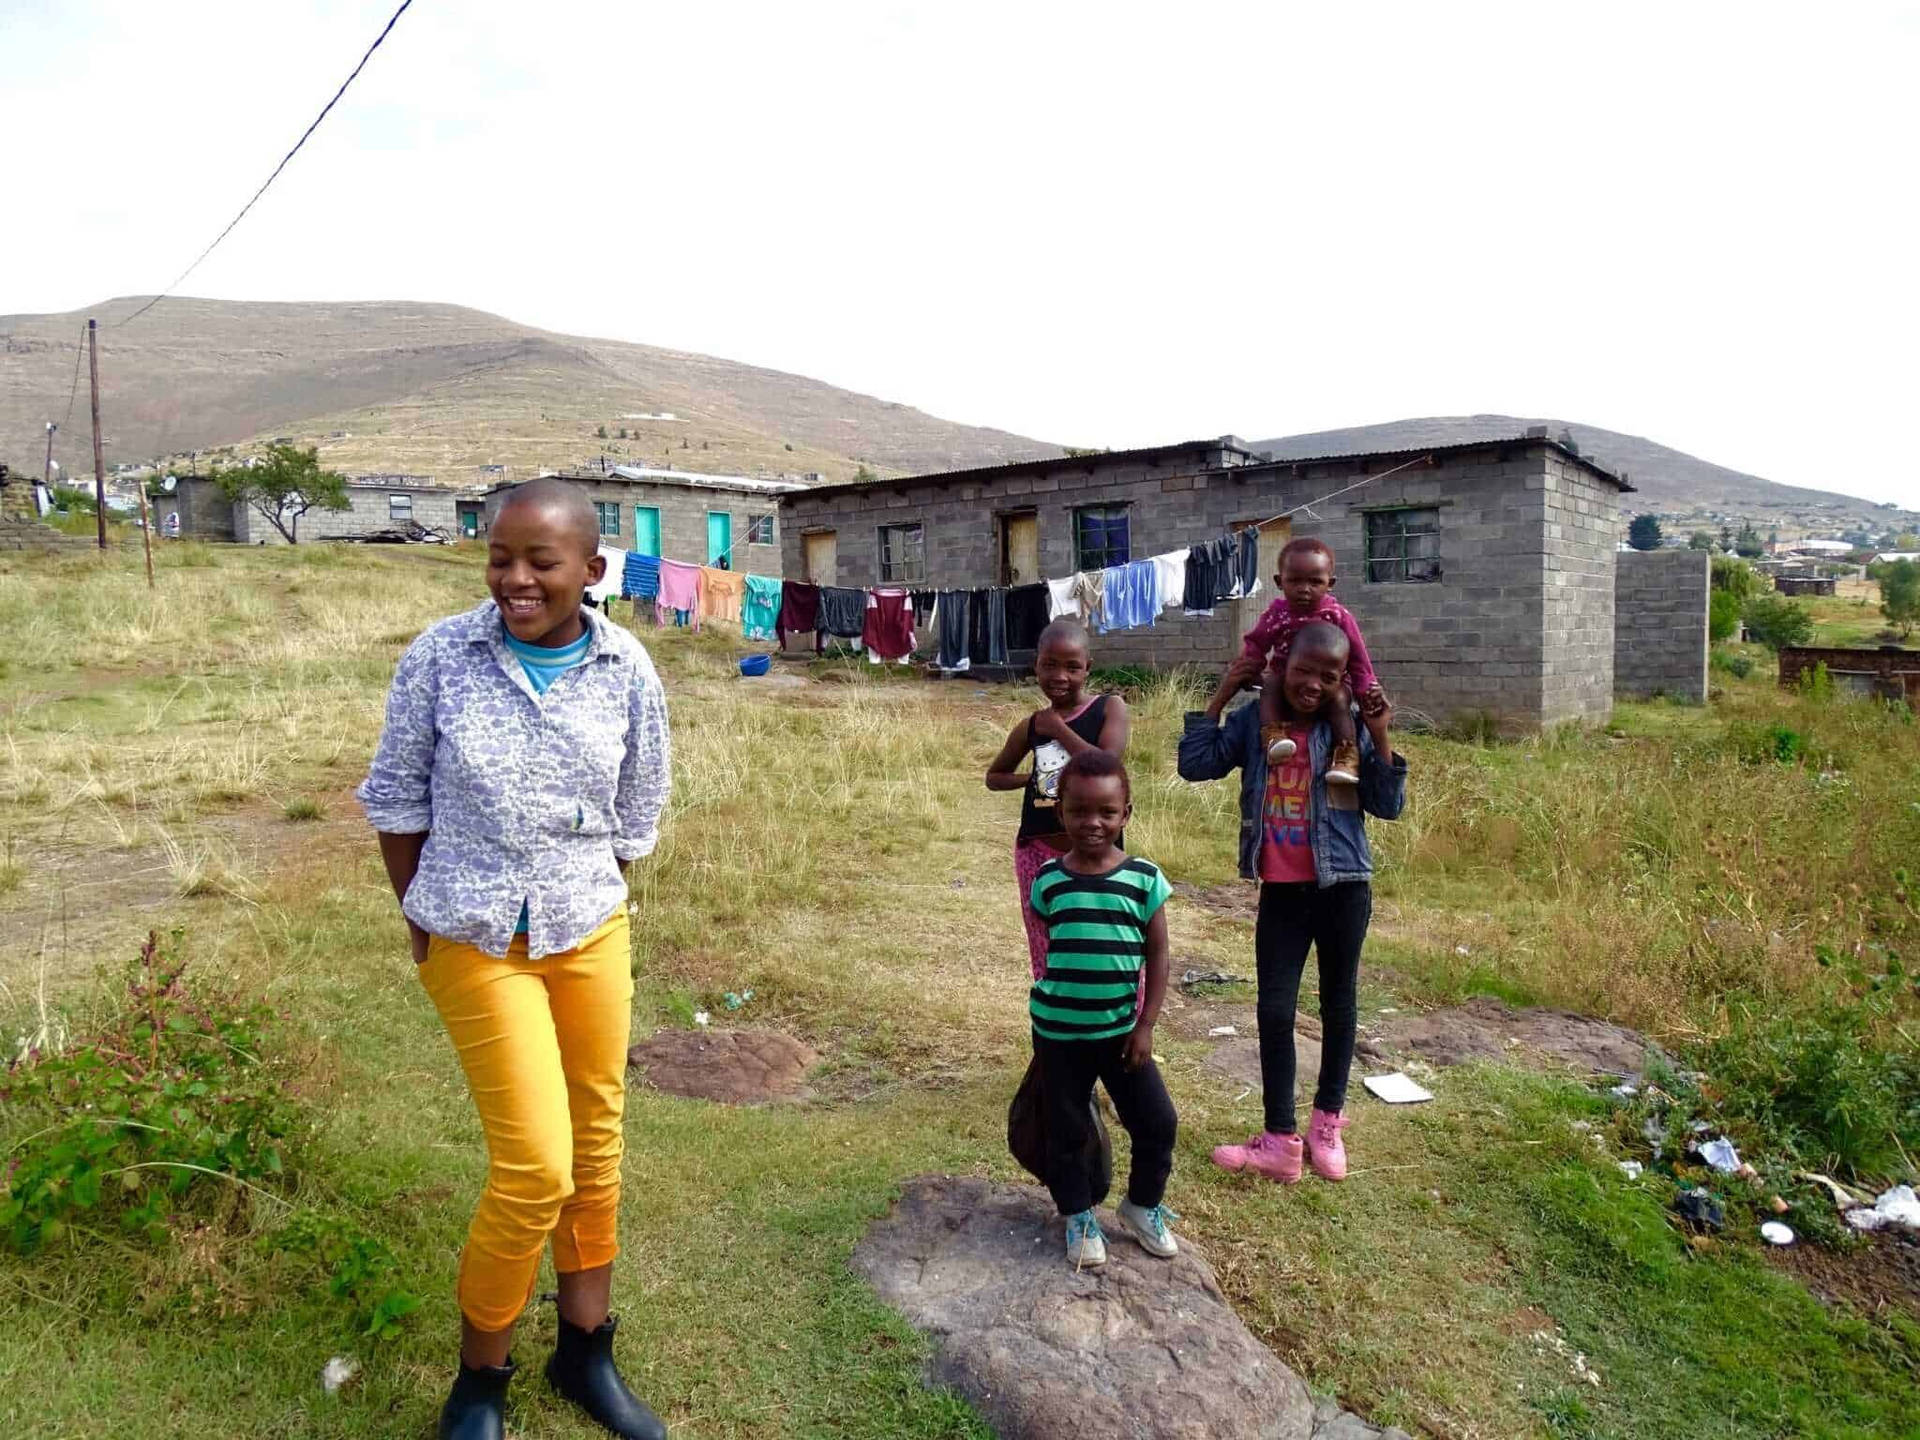 Børn fra Lesotho, der leger uden for huset, digital tapet. Wallpaper